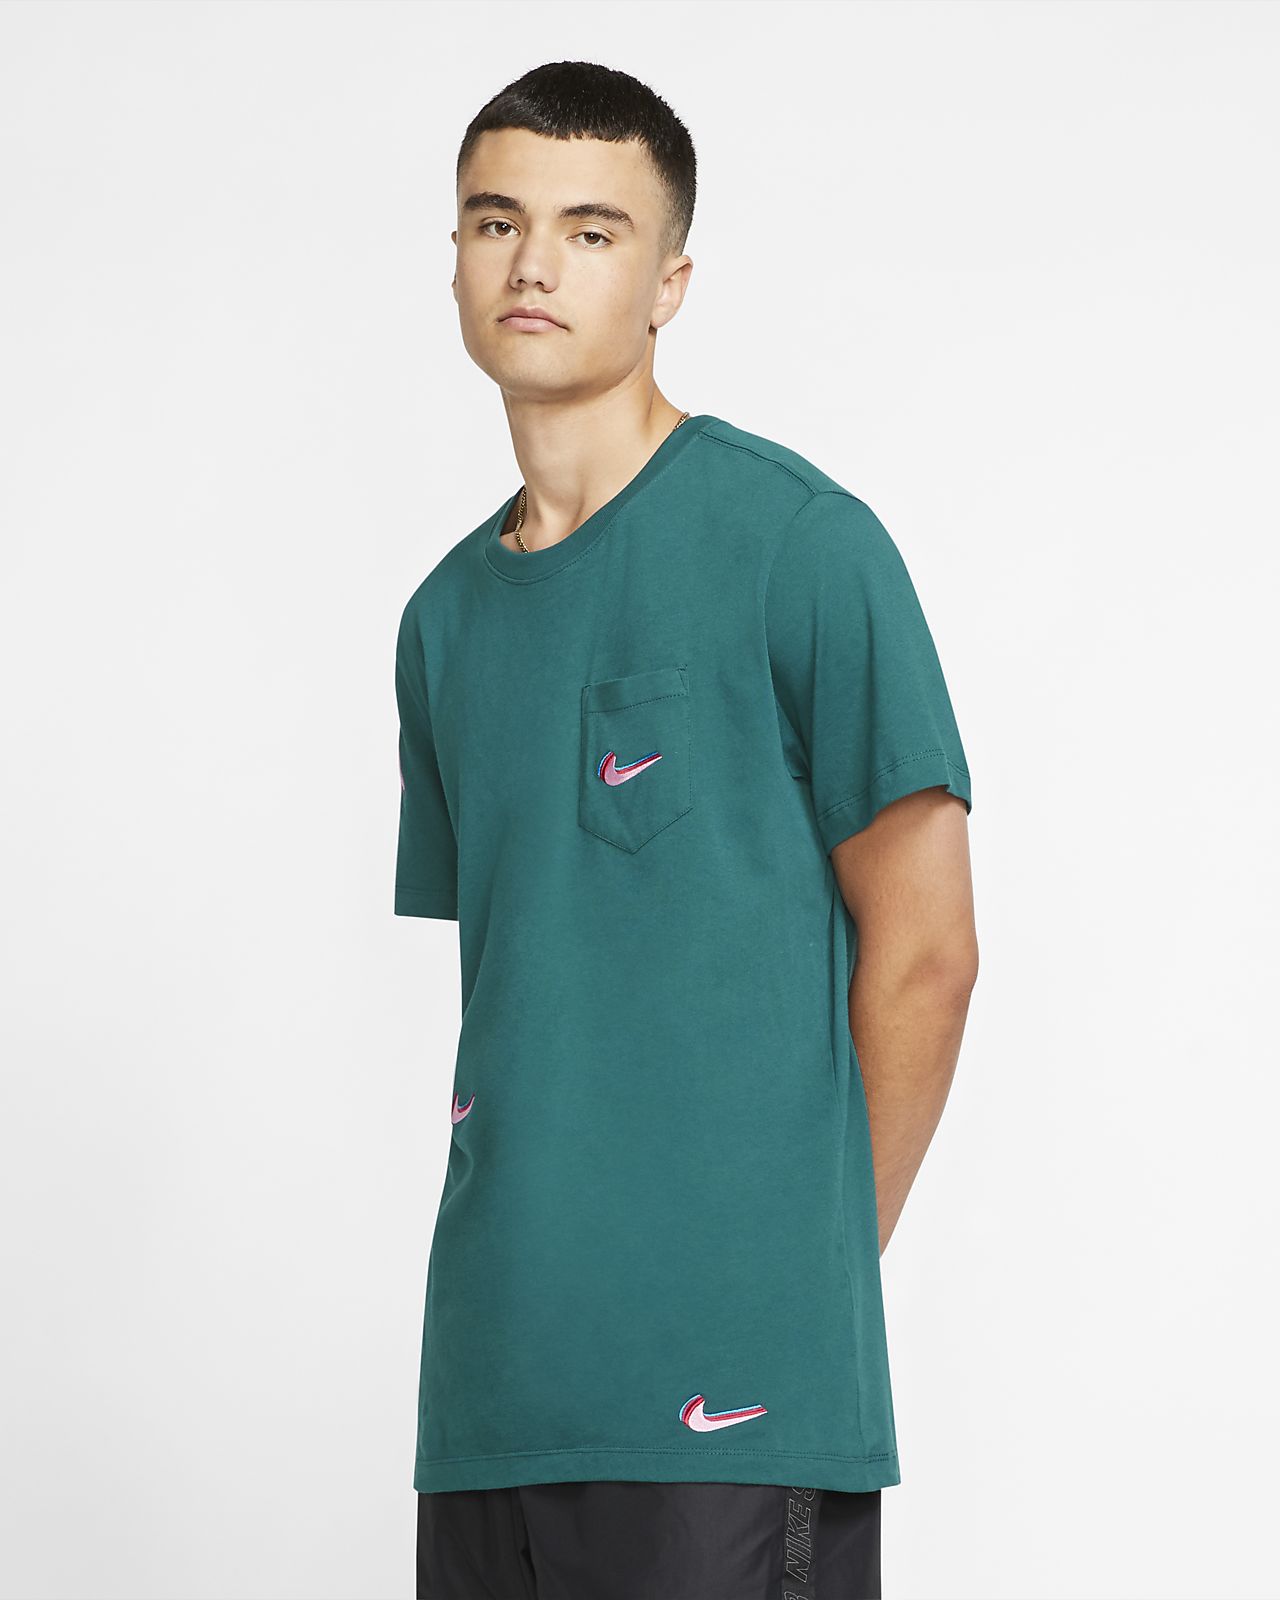 Nike公式 ナイキ Sb メンズ プリンテッド スケートボード Tシャツ